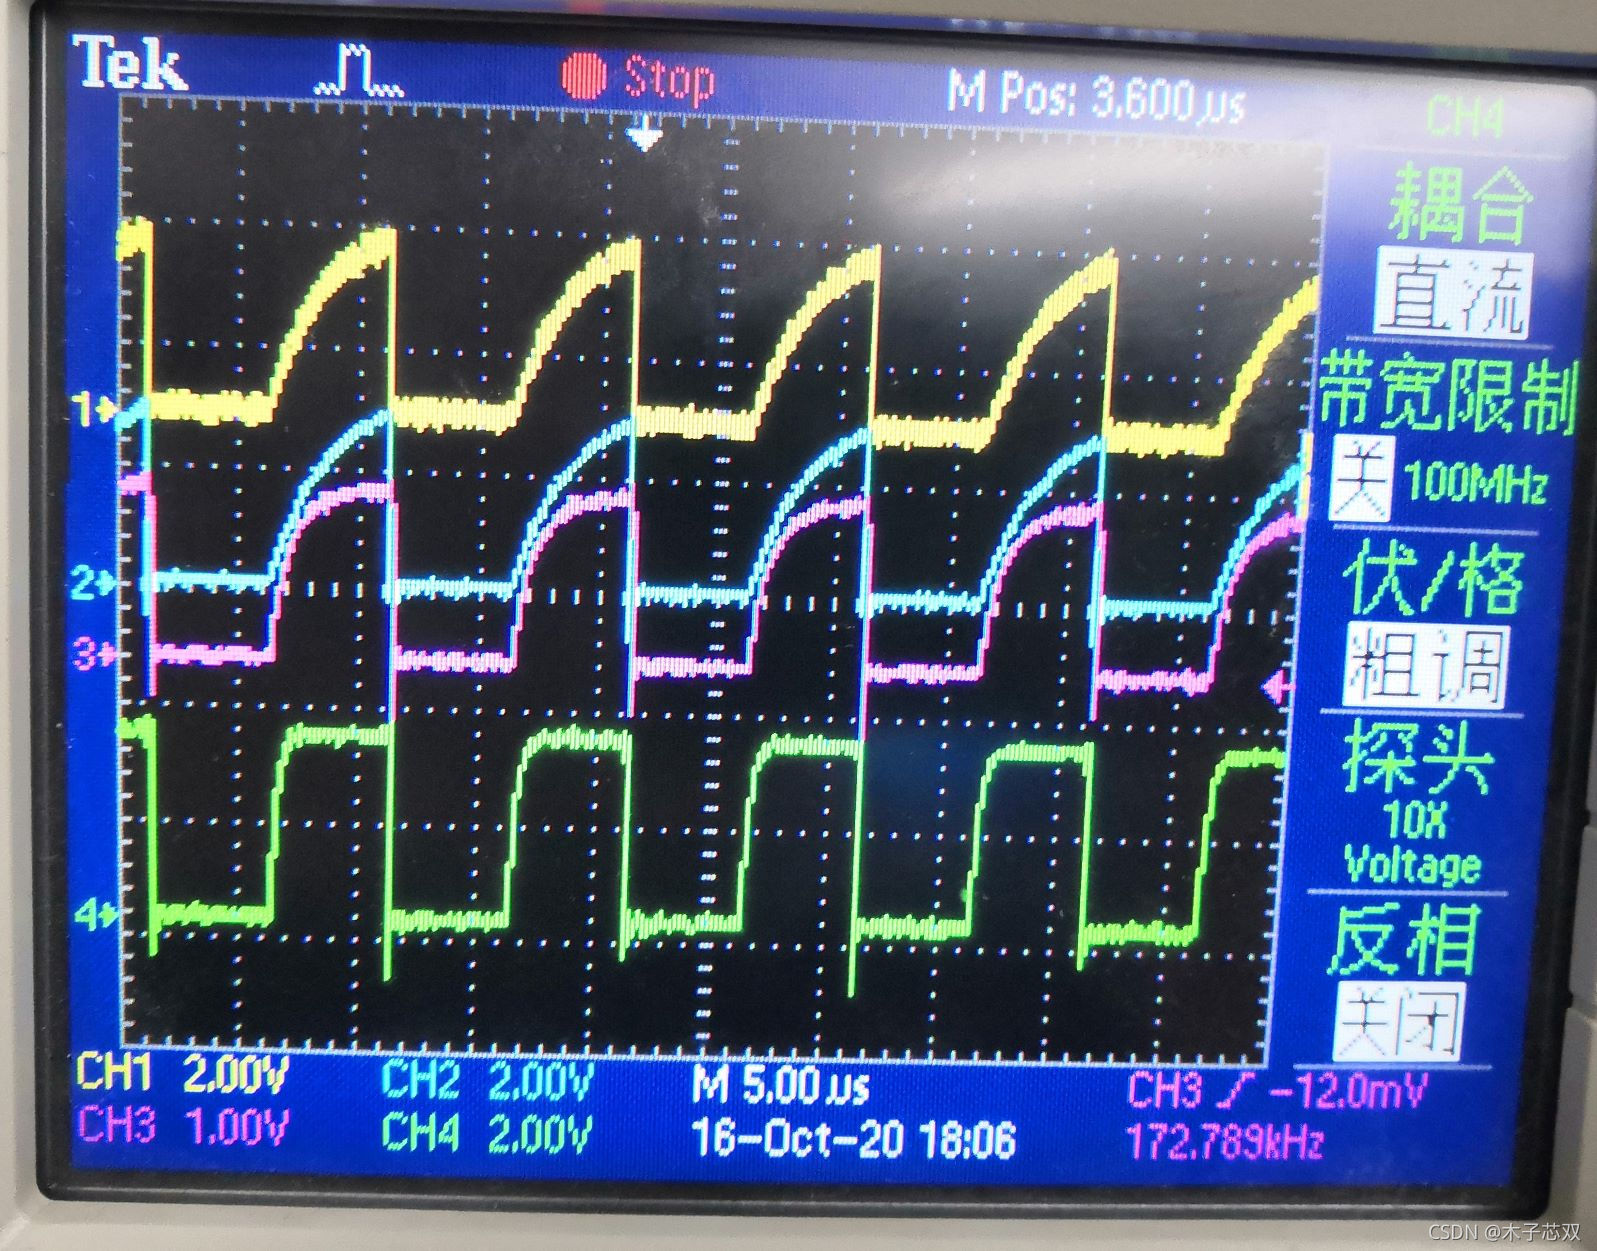 上图为上到下GPIO口输出速率依次增大SCL输出波形图